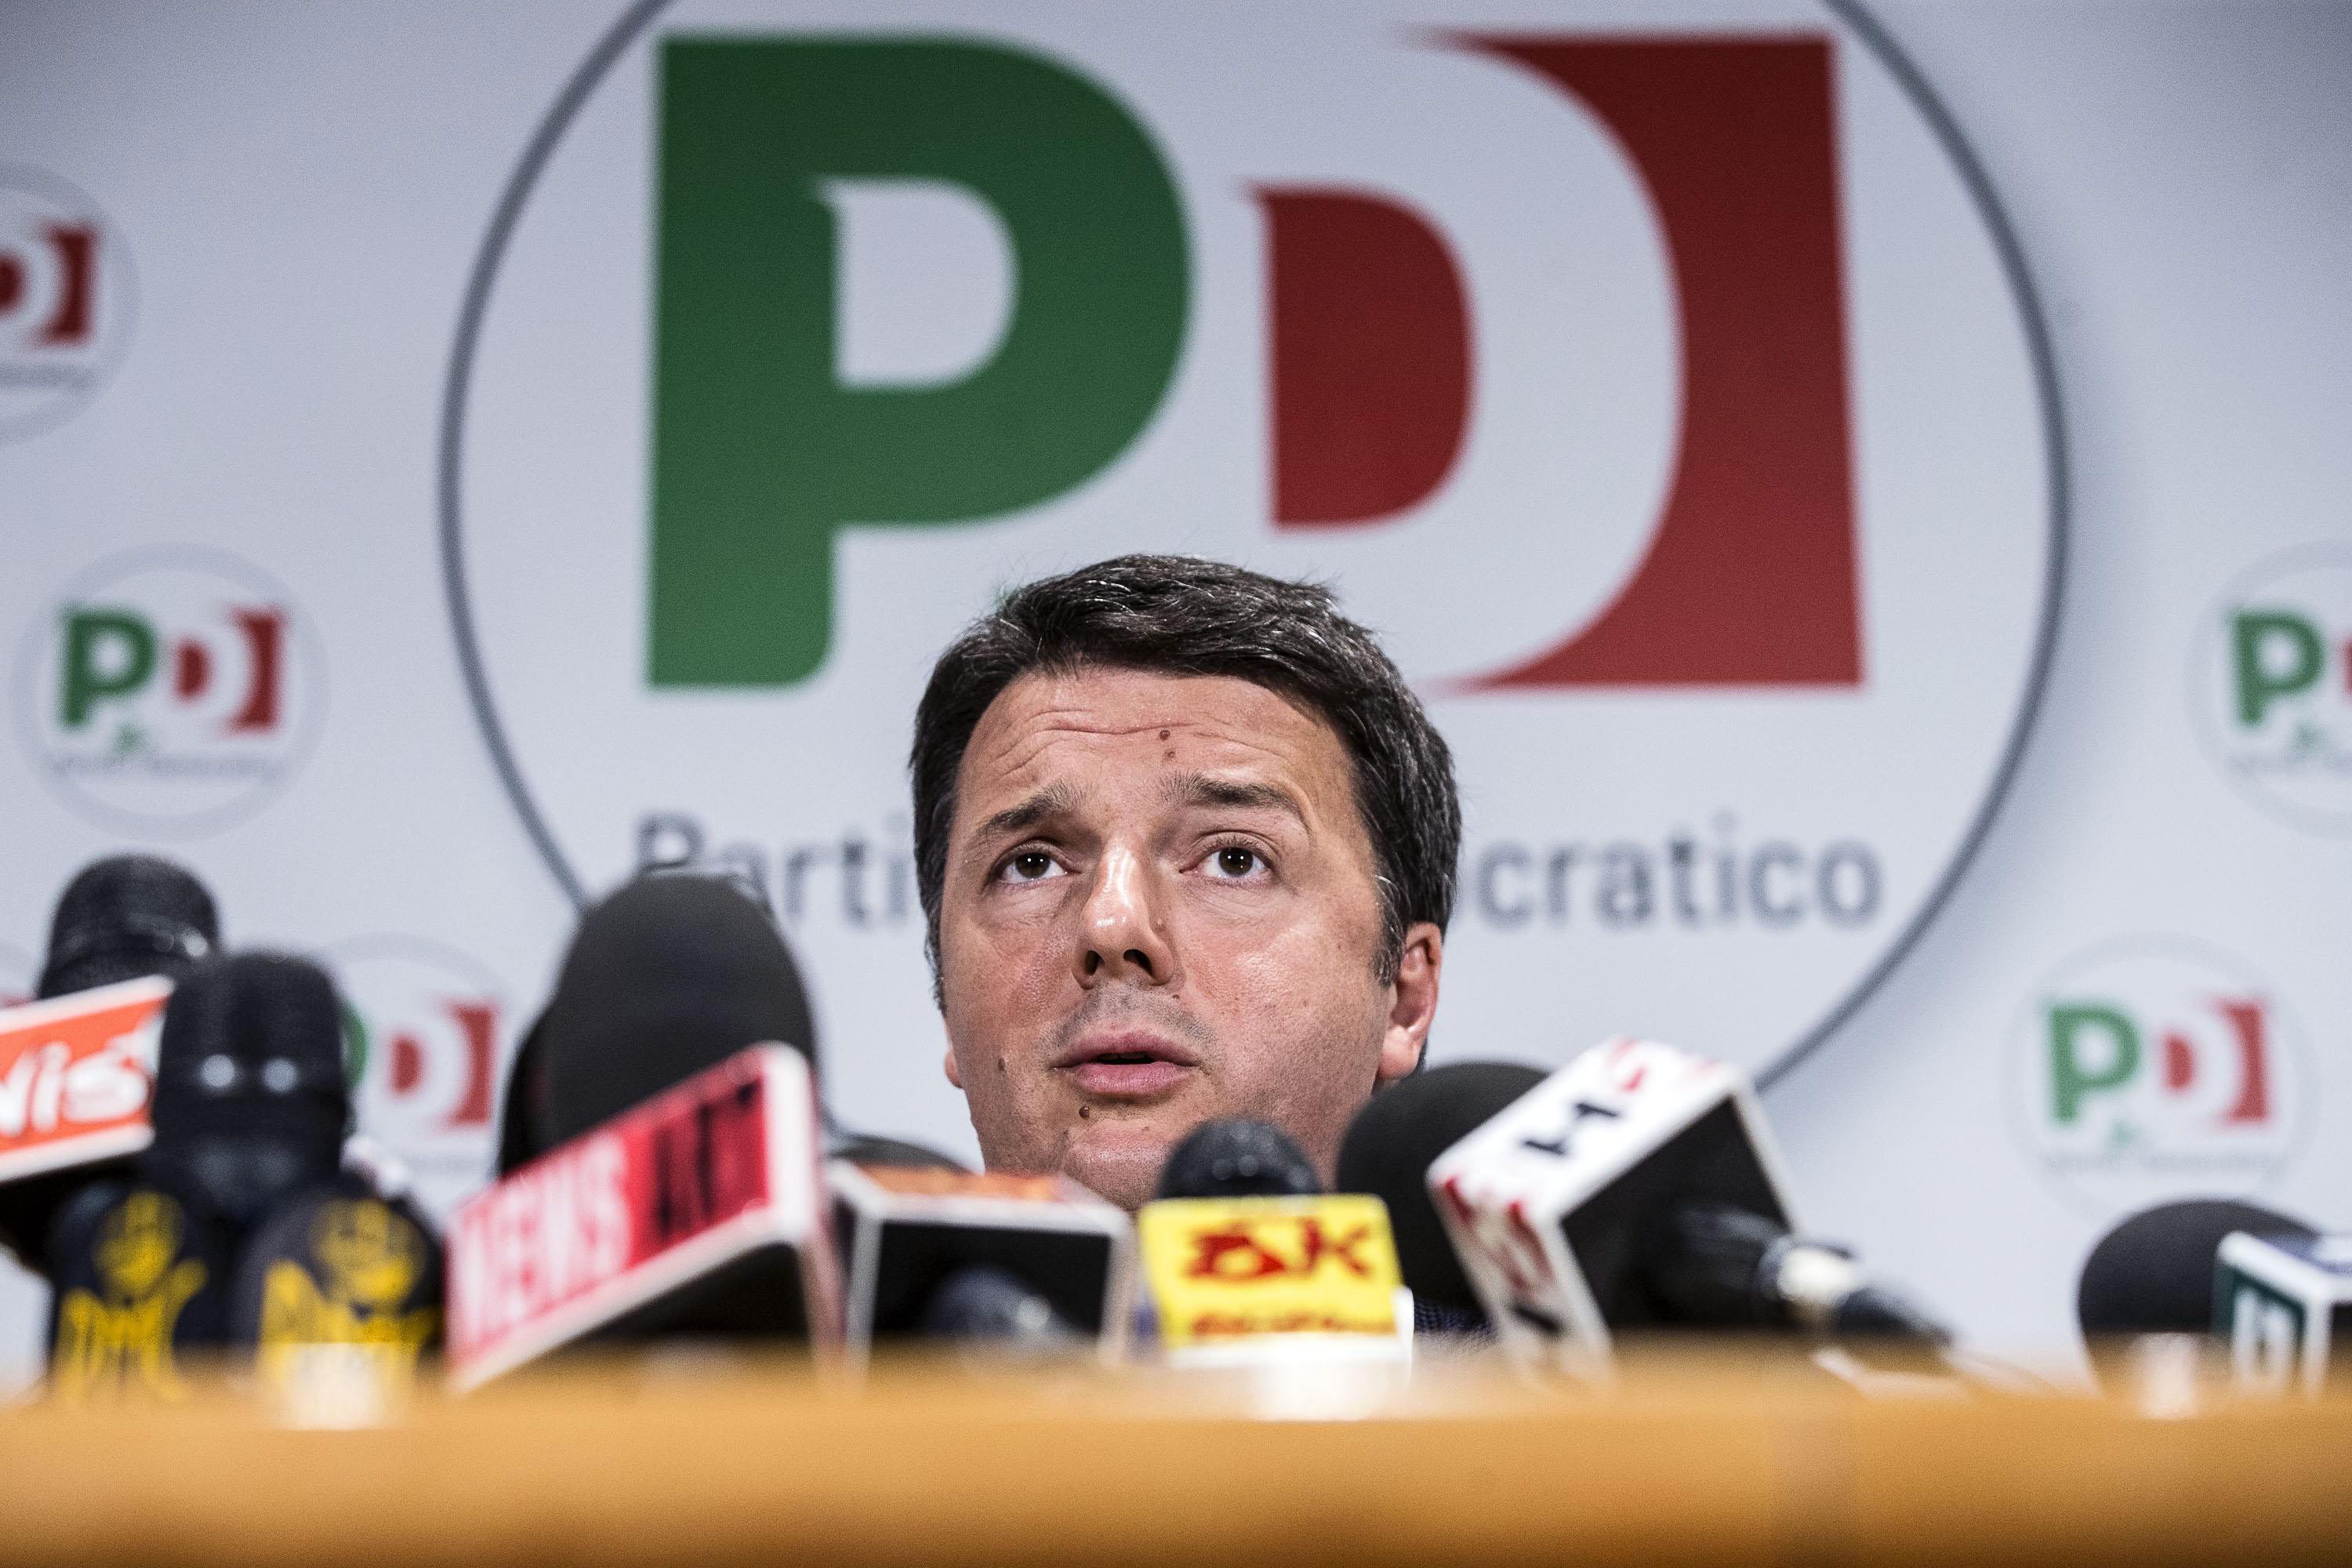 Ιταλικό δημοψήφισμα: Υπό απειλή ρήγματος, ο Ρέντσι κάνει «παραχωρήσεις»